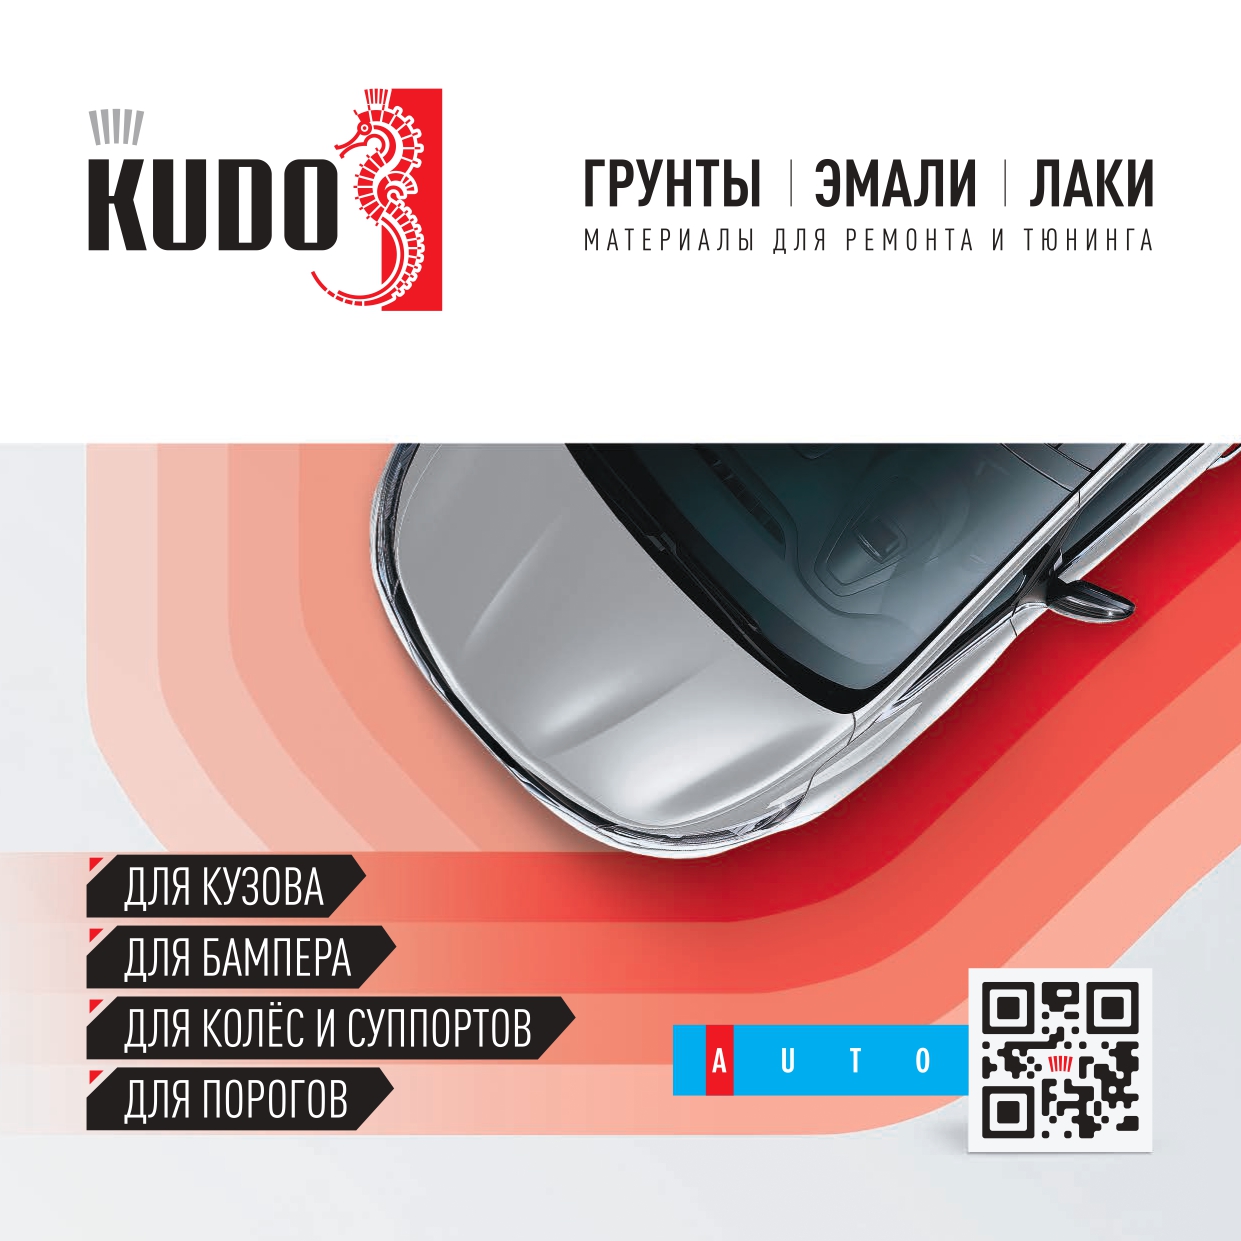 Каталог бренда KUDO - Авто